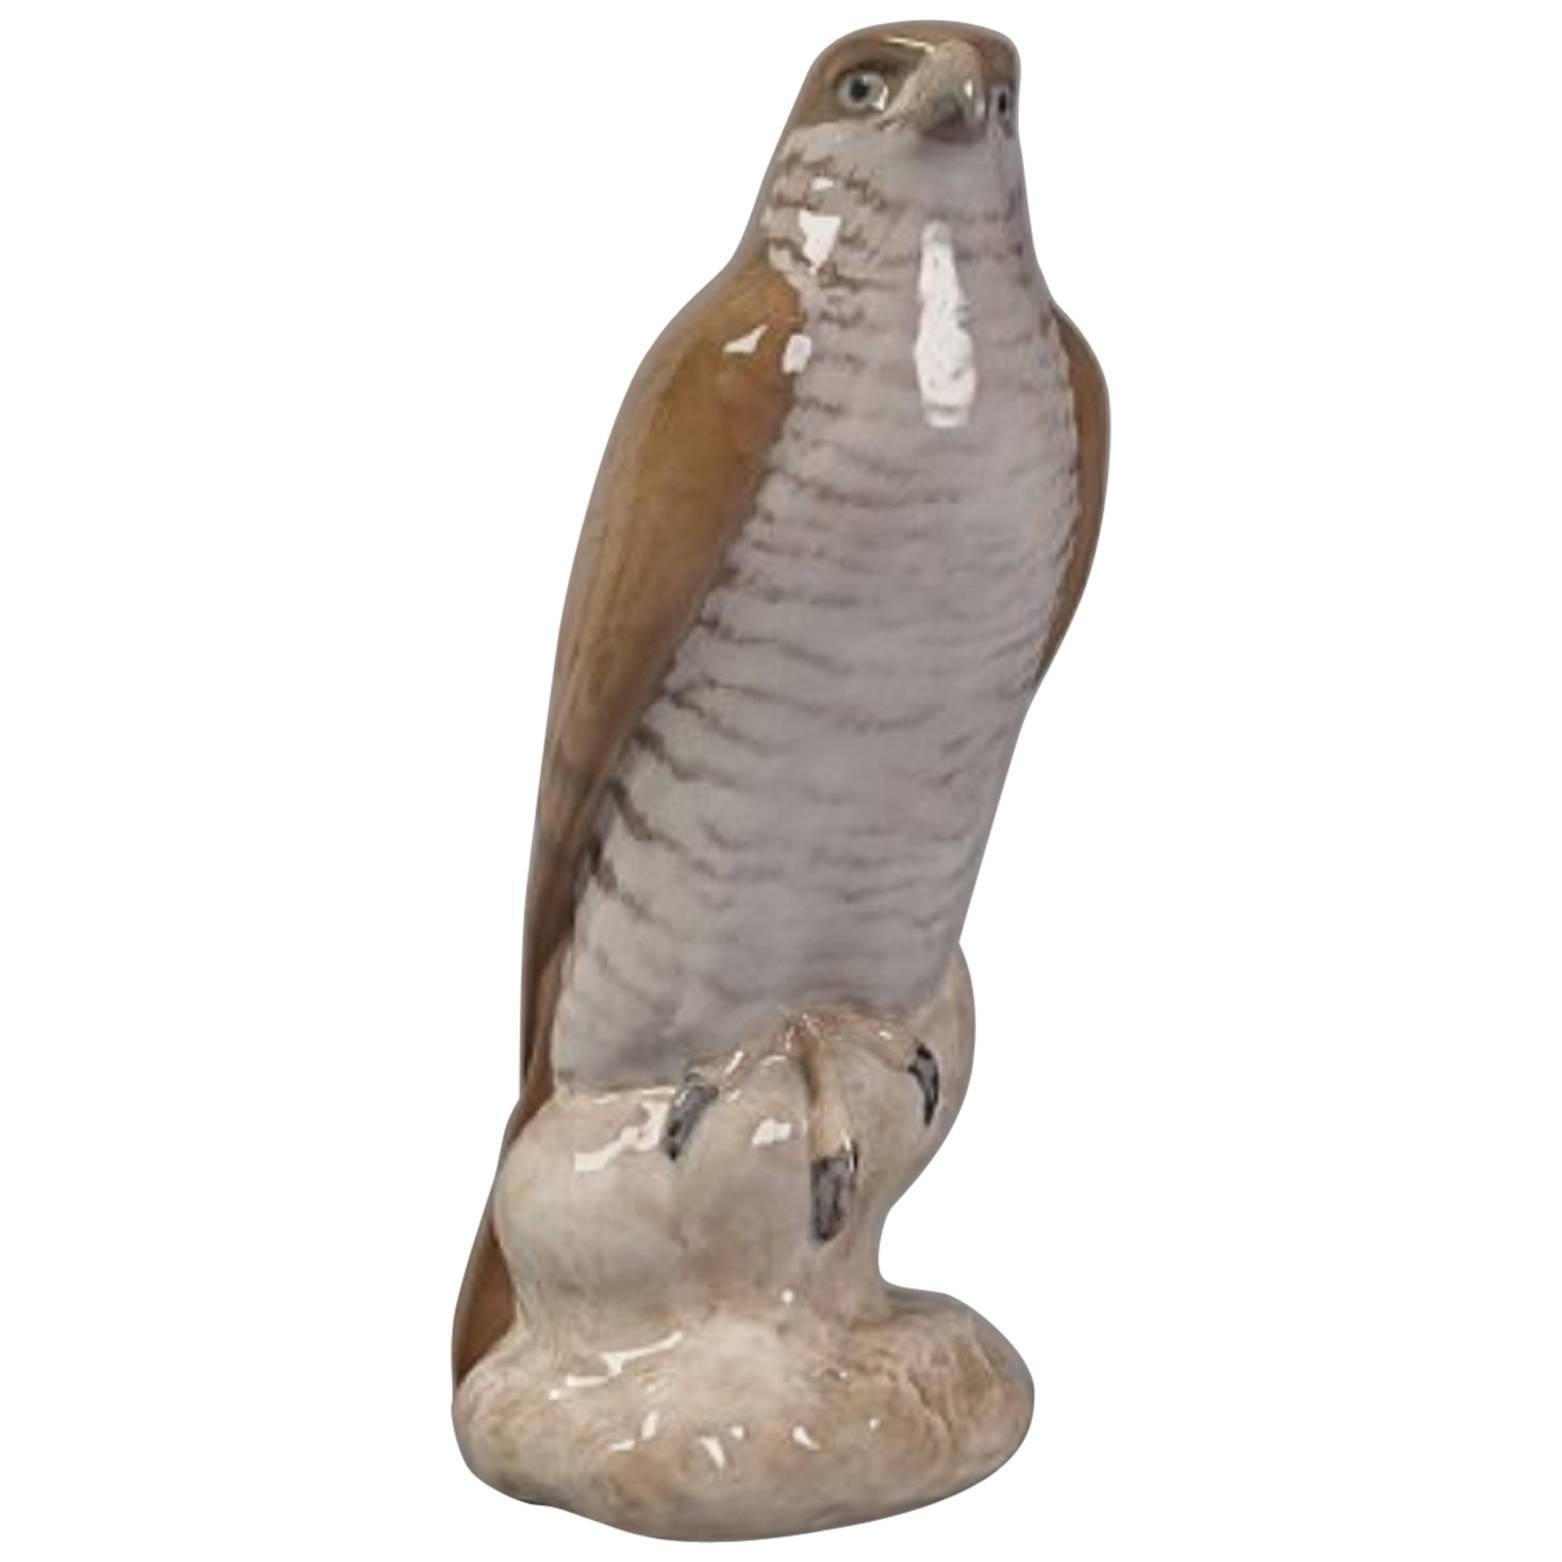 Großer Falcon von B&G, Figur aus Porzellan, Nummer 1892, entworfen von Niels Nielsen